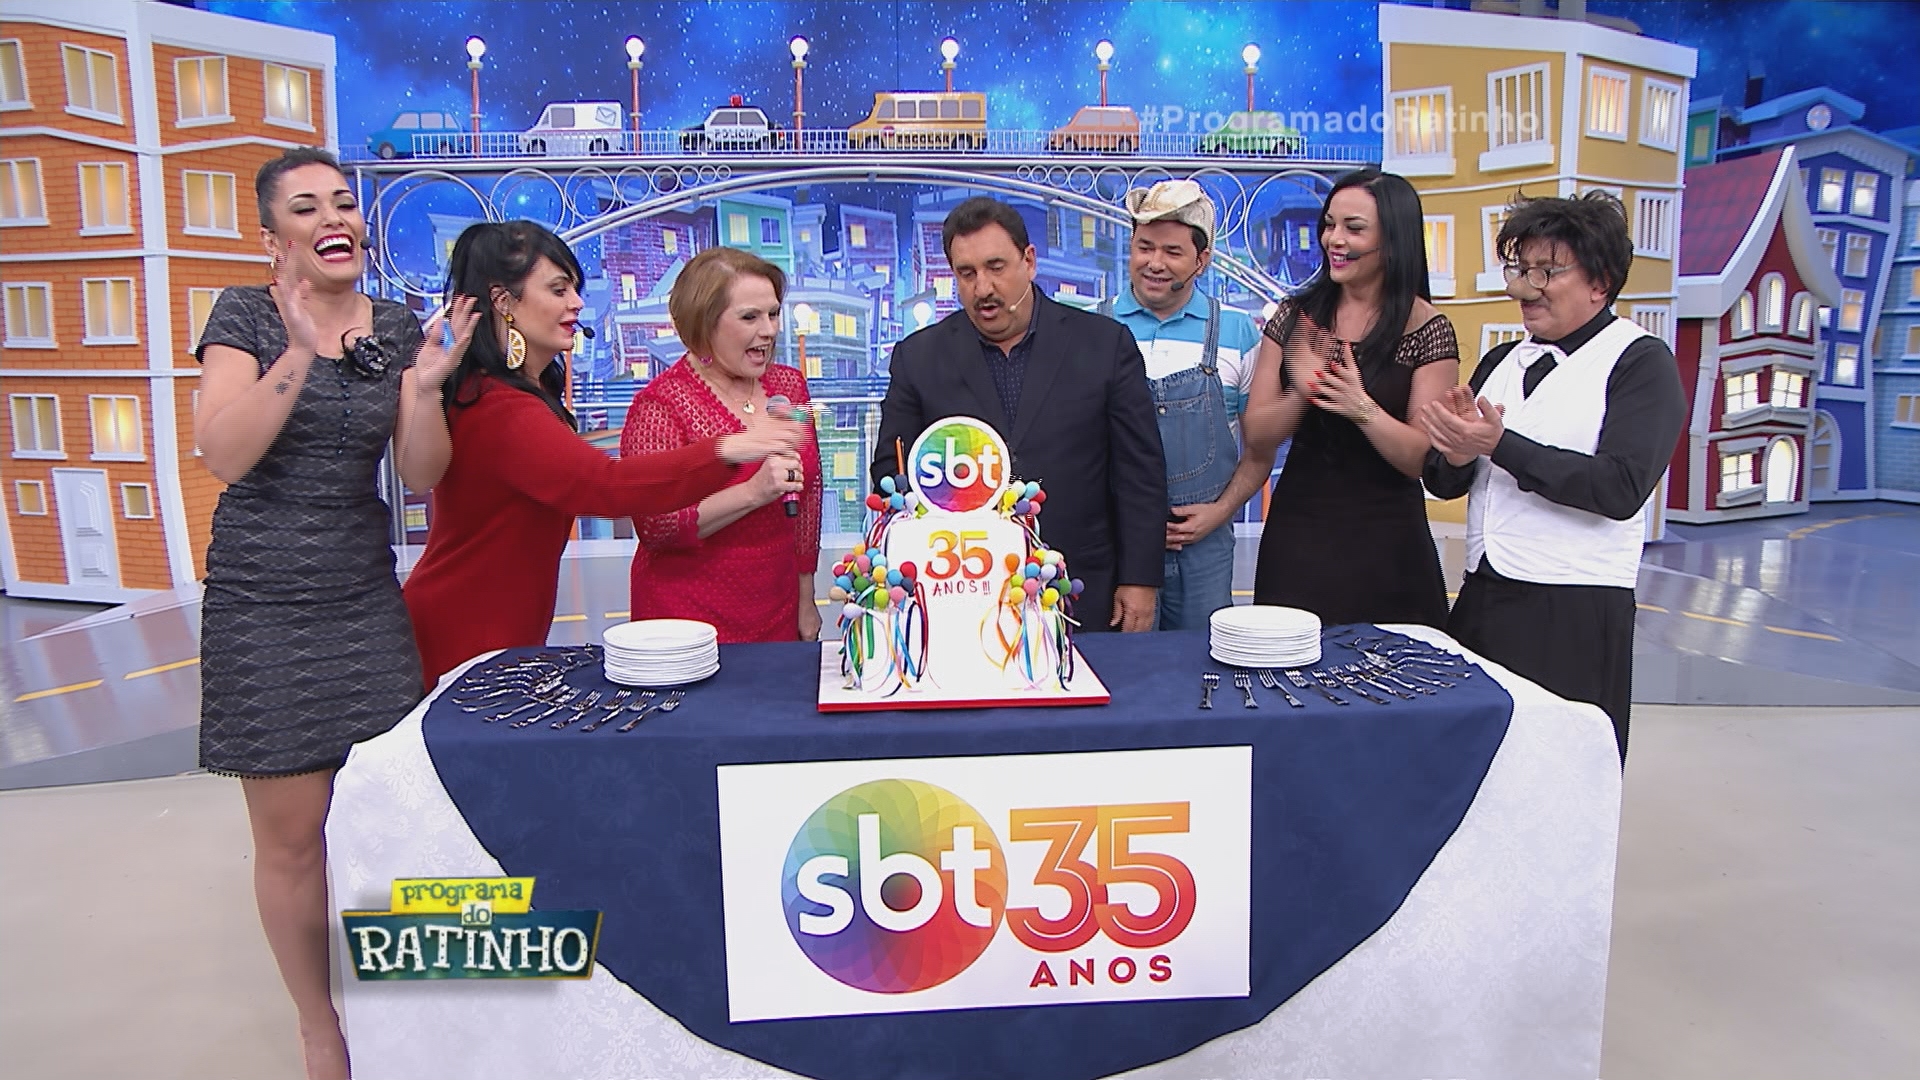 Ratinho celebras os 35 anos do SBT